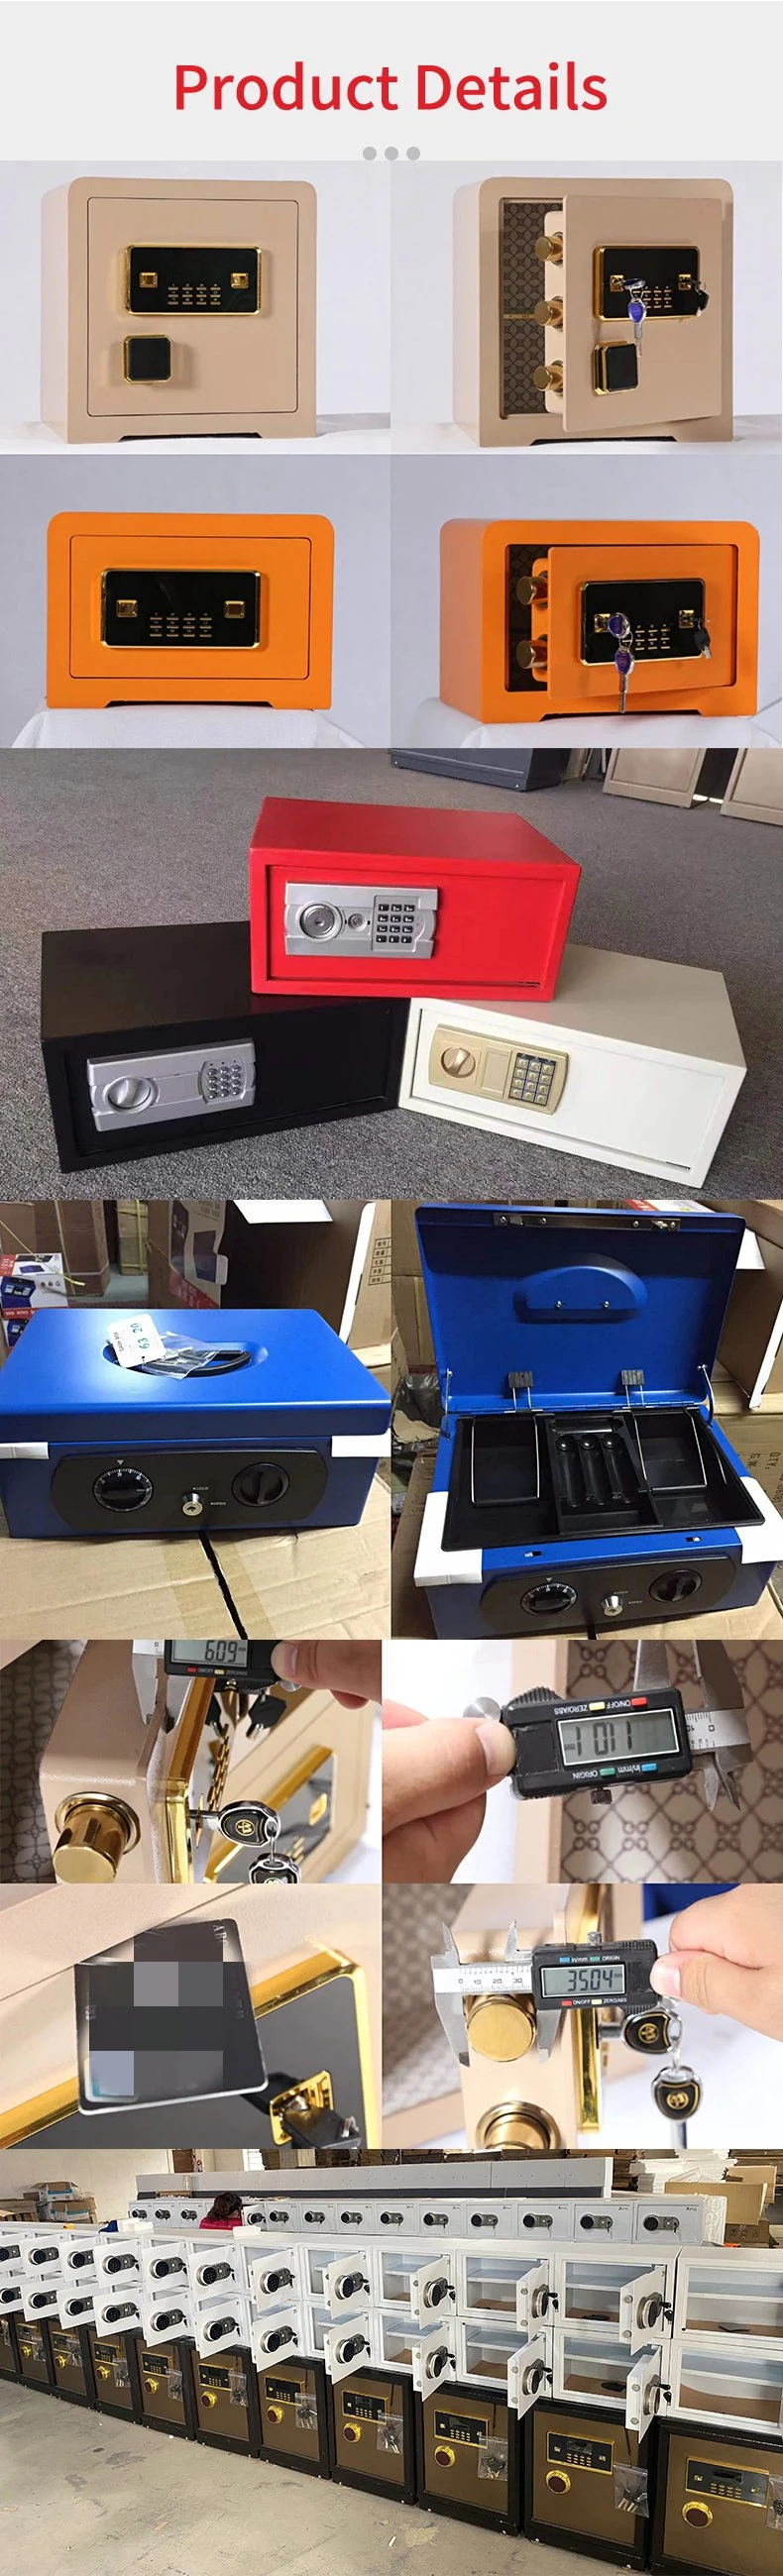 Electronic Digital Fingerprint Locker Safes for Office Home Bank Safe Box